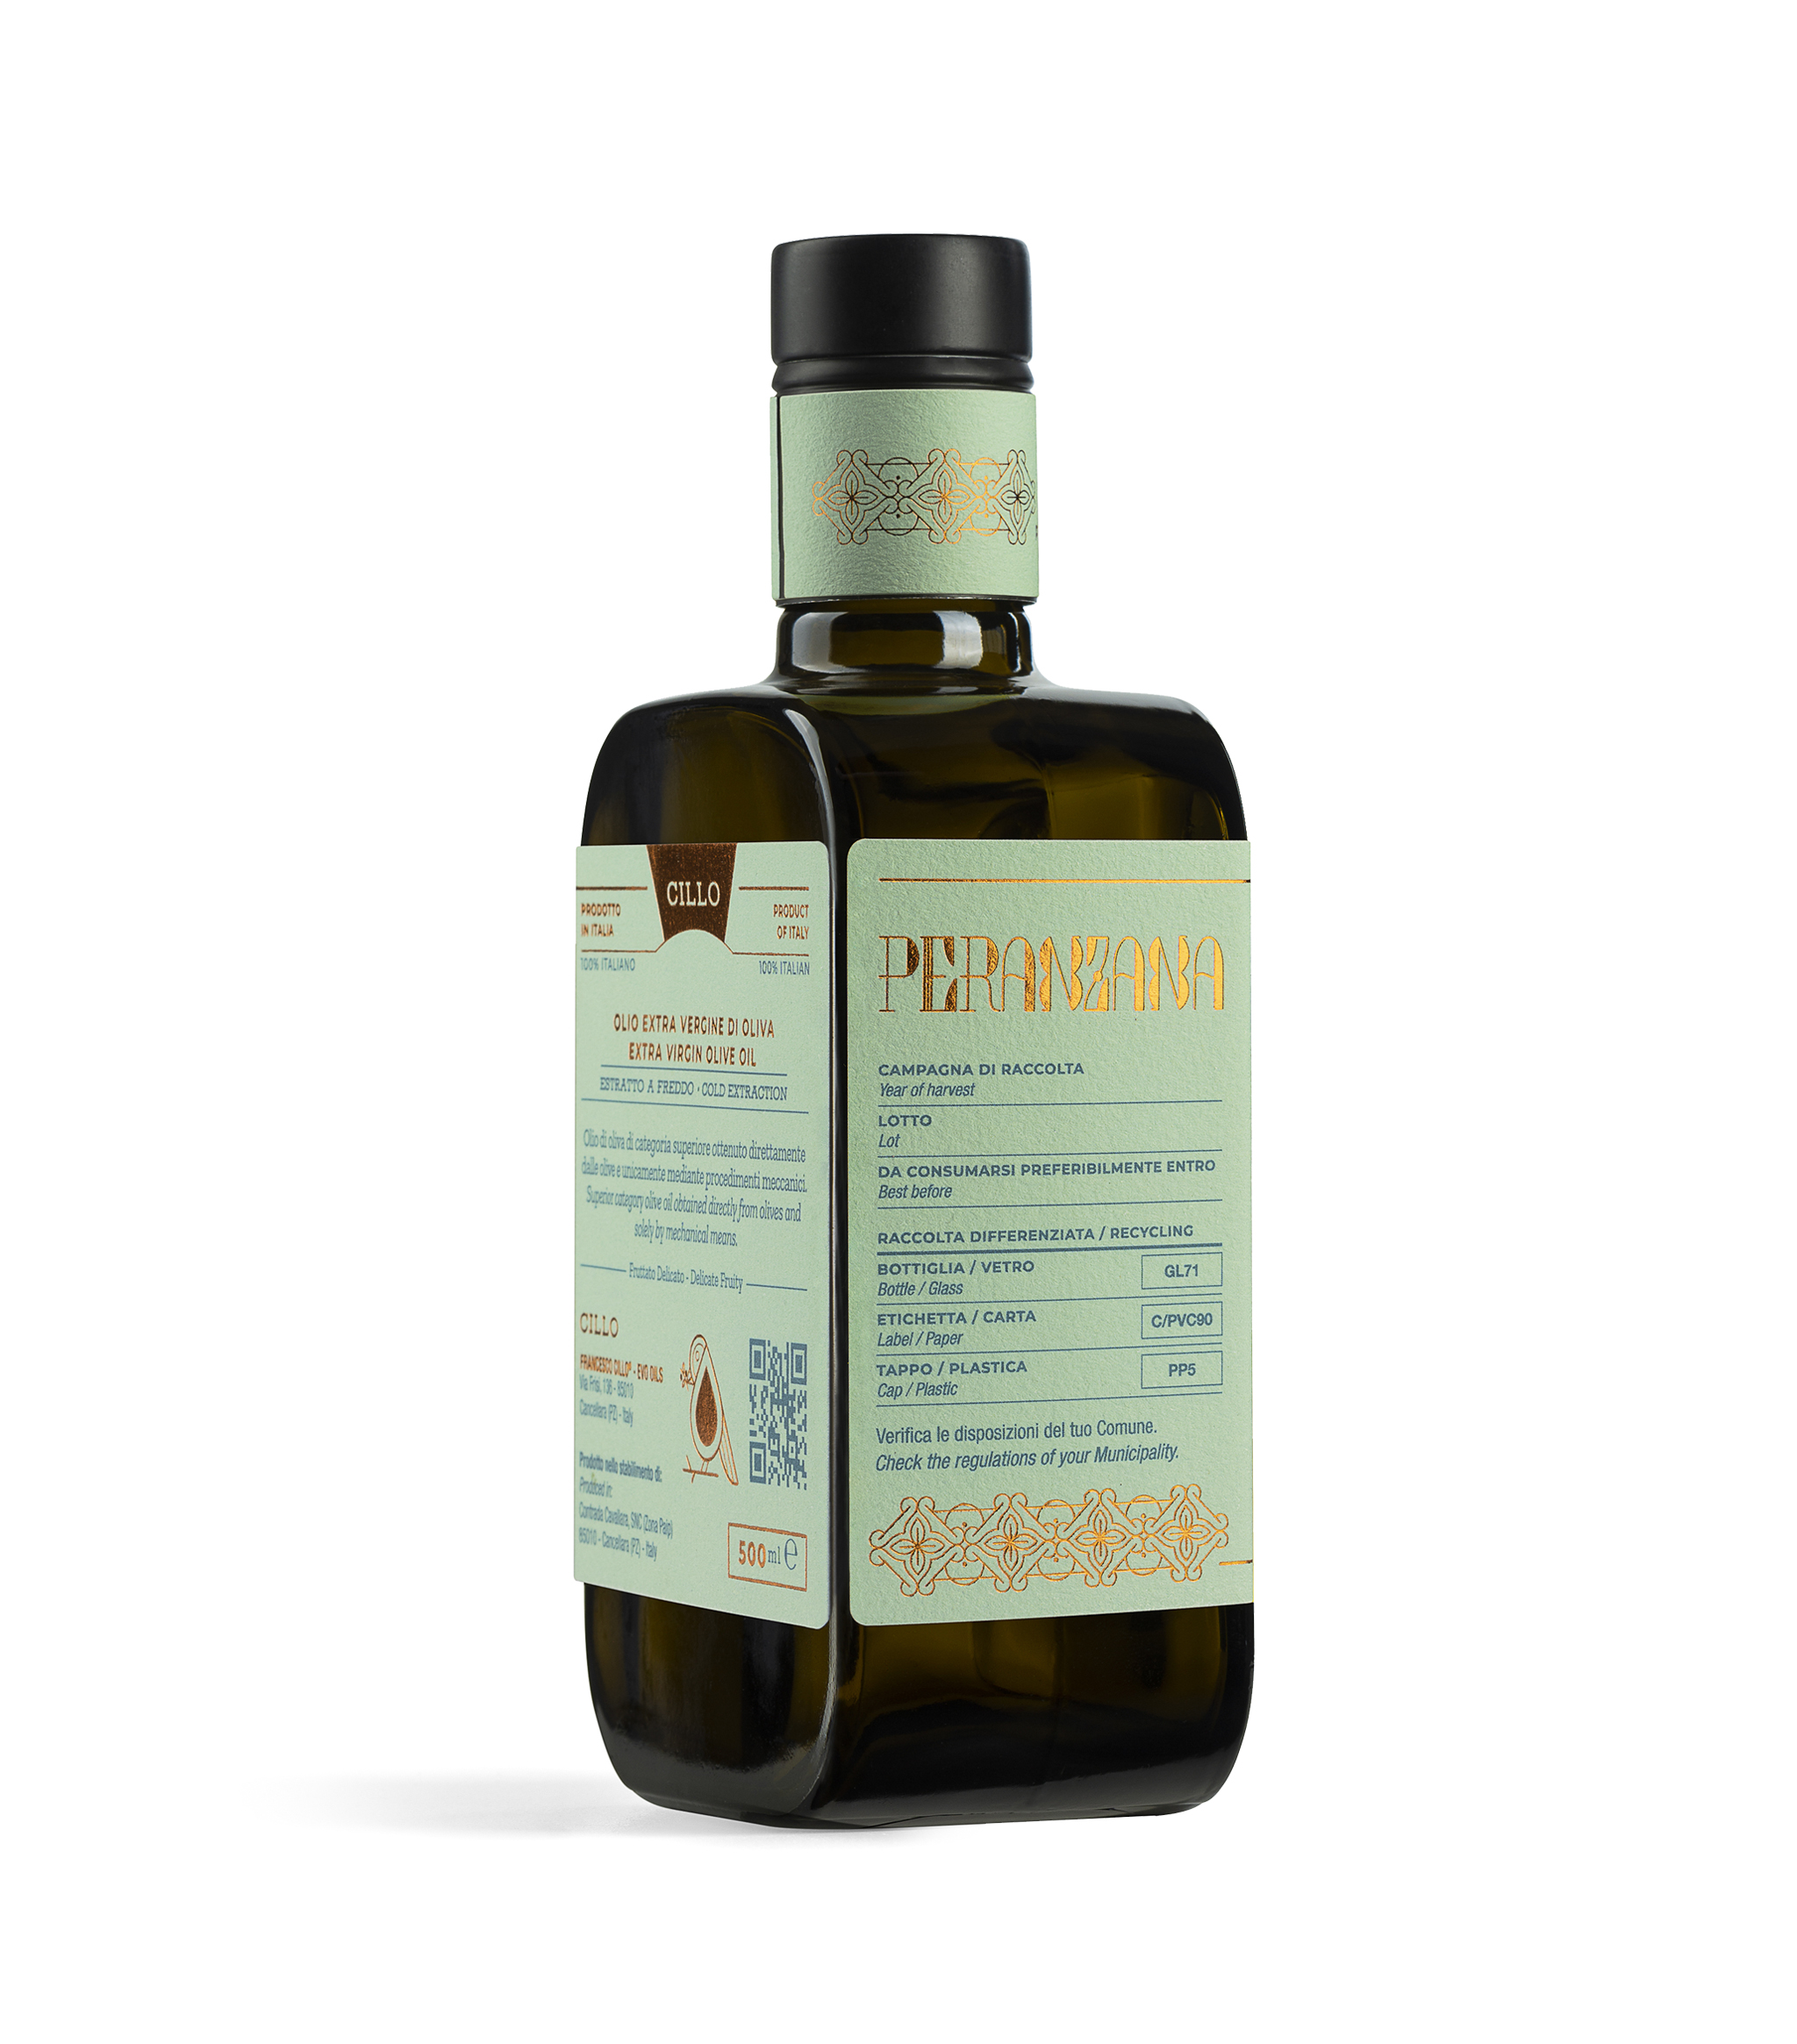 Olio extravergine di oliva Monocultivar Peranzana, Lato2, 500ml, Francesco Cillo EVO Oils.